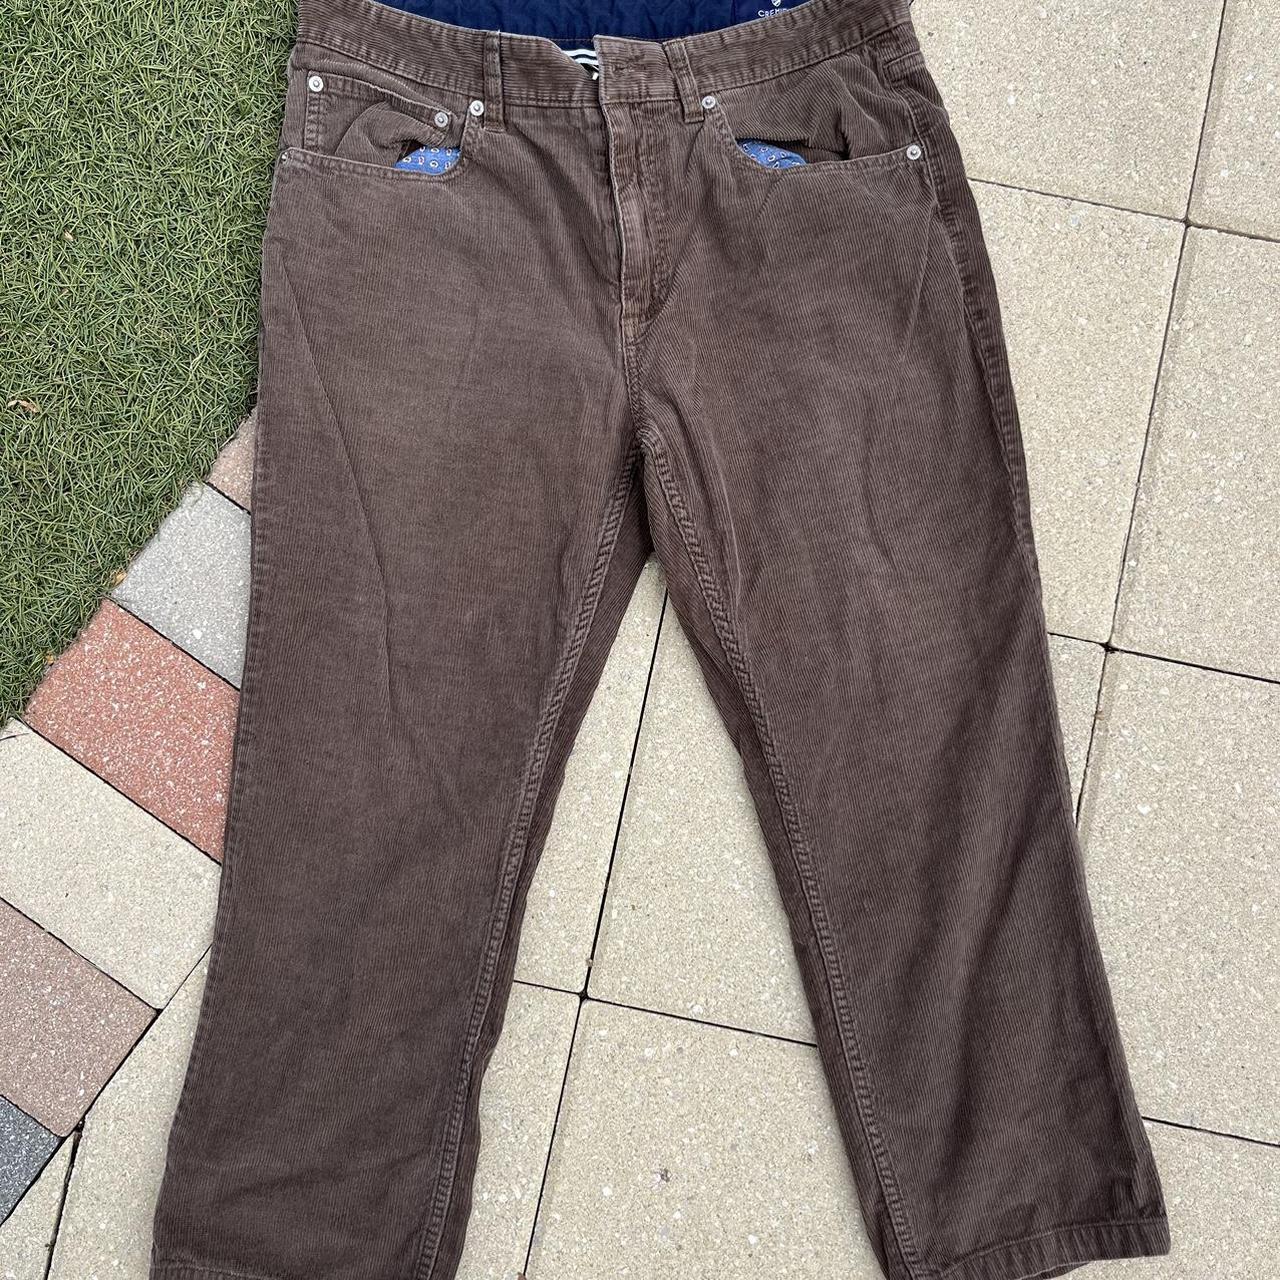 Cremieux Corduroy Short Cut Pants Size: 32x30... - Depop